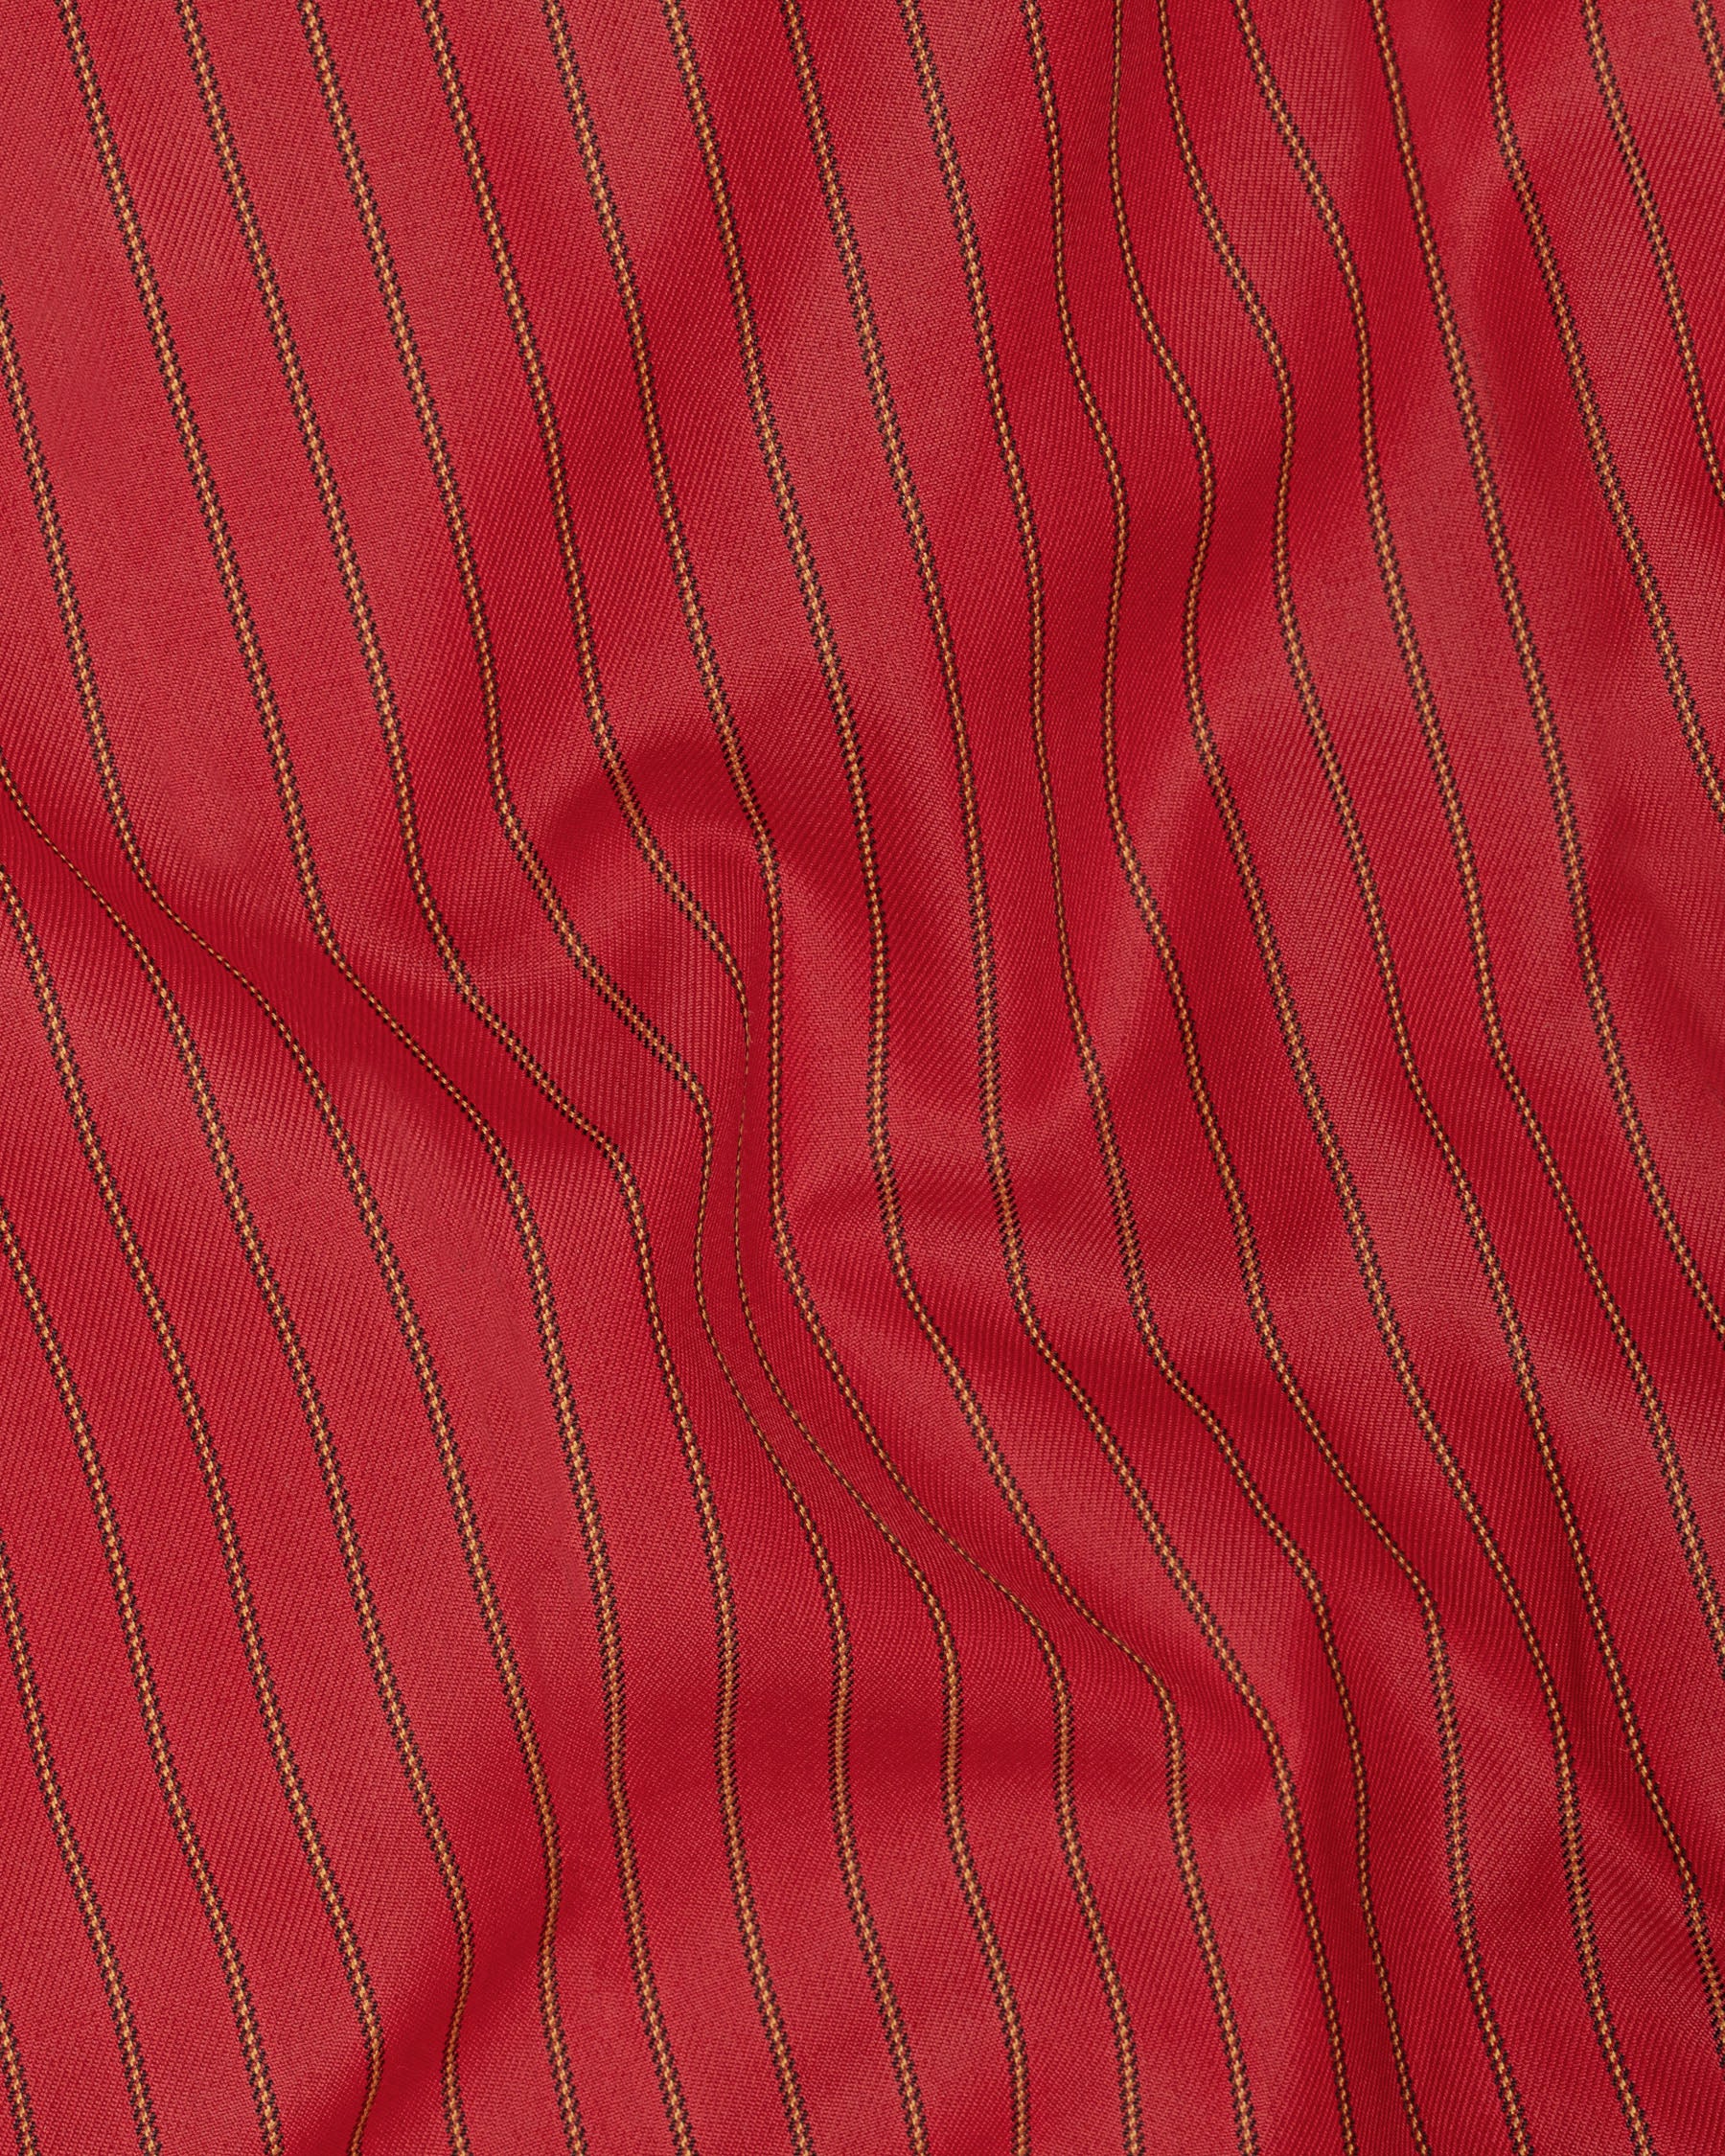 Medium Carmine Red Striped Wool Rich Cross Buttoned Bandhgala Blazer BL1505-CBG2-36, BL1505-CBG2-38, BL1505-CBG2-40, BL1505-CBG2-42, BL1505-CBG2-44, BL1505-CBG2-46, BL1505-CBG2-48, BL1505-CBG2-50, BL1505-CBG2-52, BL1505-CBG2-54, BL1505-CBG2-56, BL1505-CBG2-58, BL1505-CBG2-60